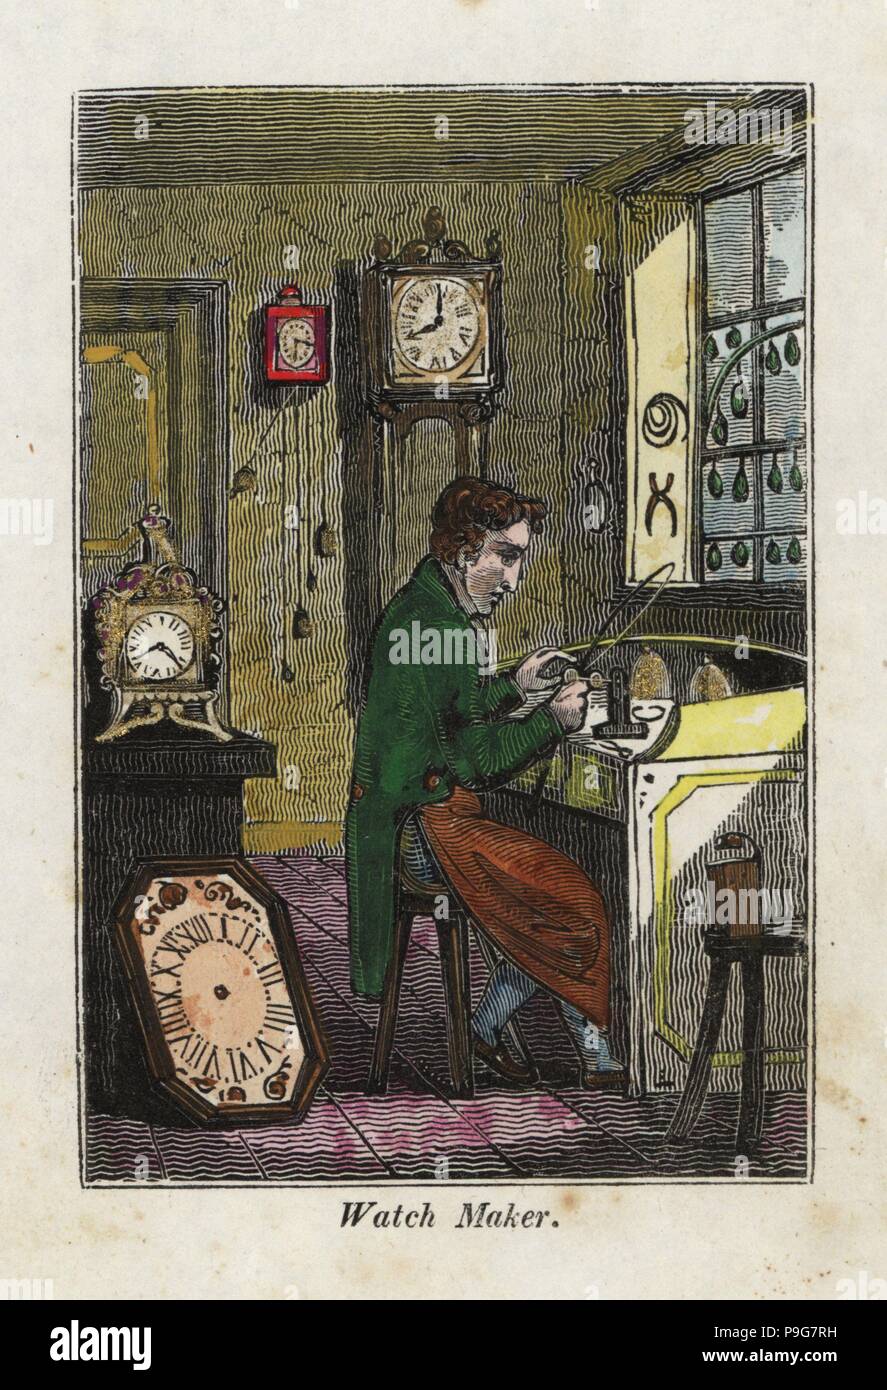 Horloger en tablier assis à son banc en metal gears. Gravure sur bois coloriée du livre de l'anglais et les métiers de la Bibliothèque des arts utiles, Phillips, Londres, 1818. Banque D'Images